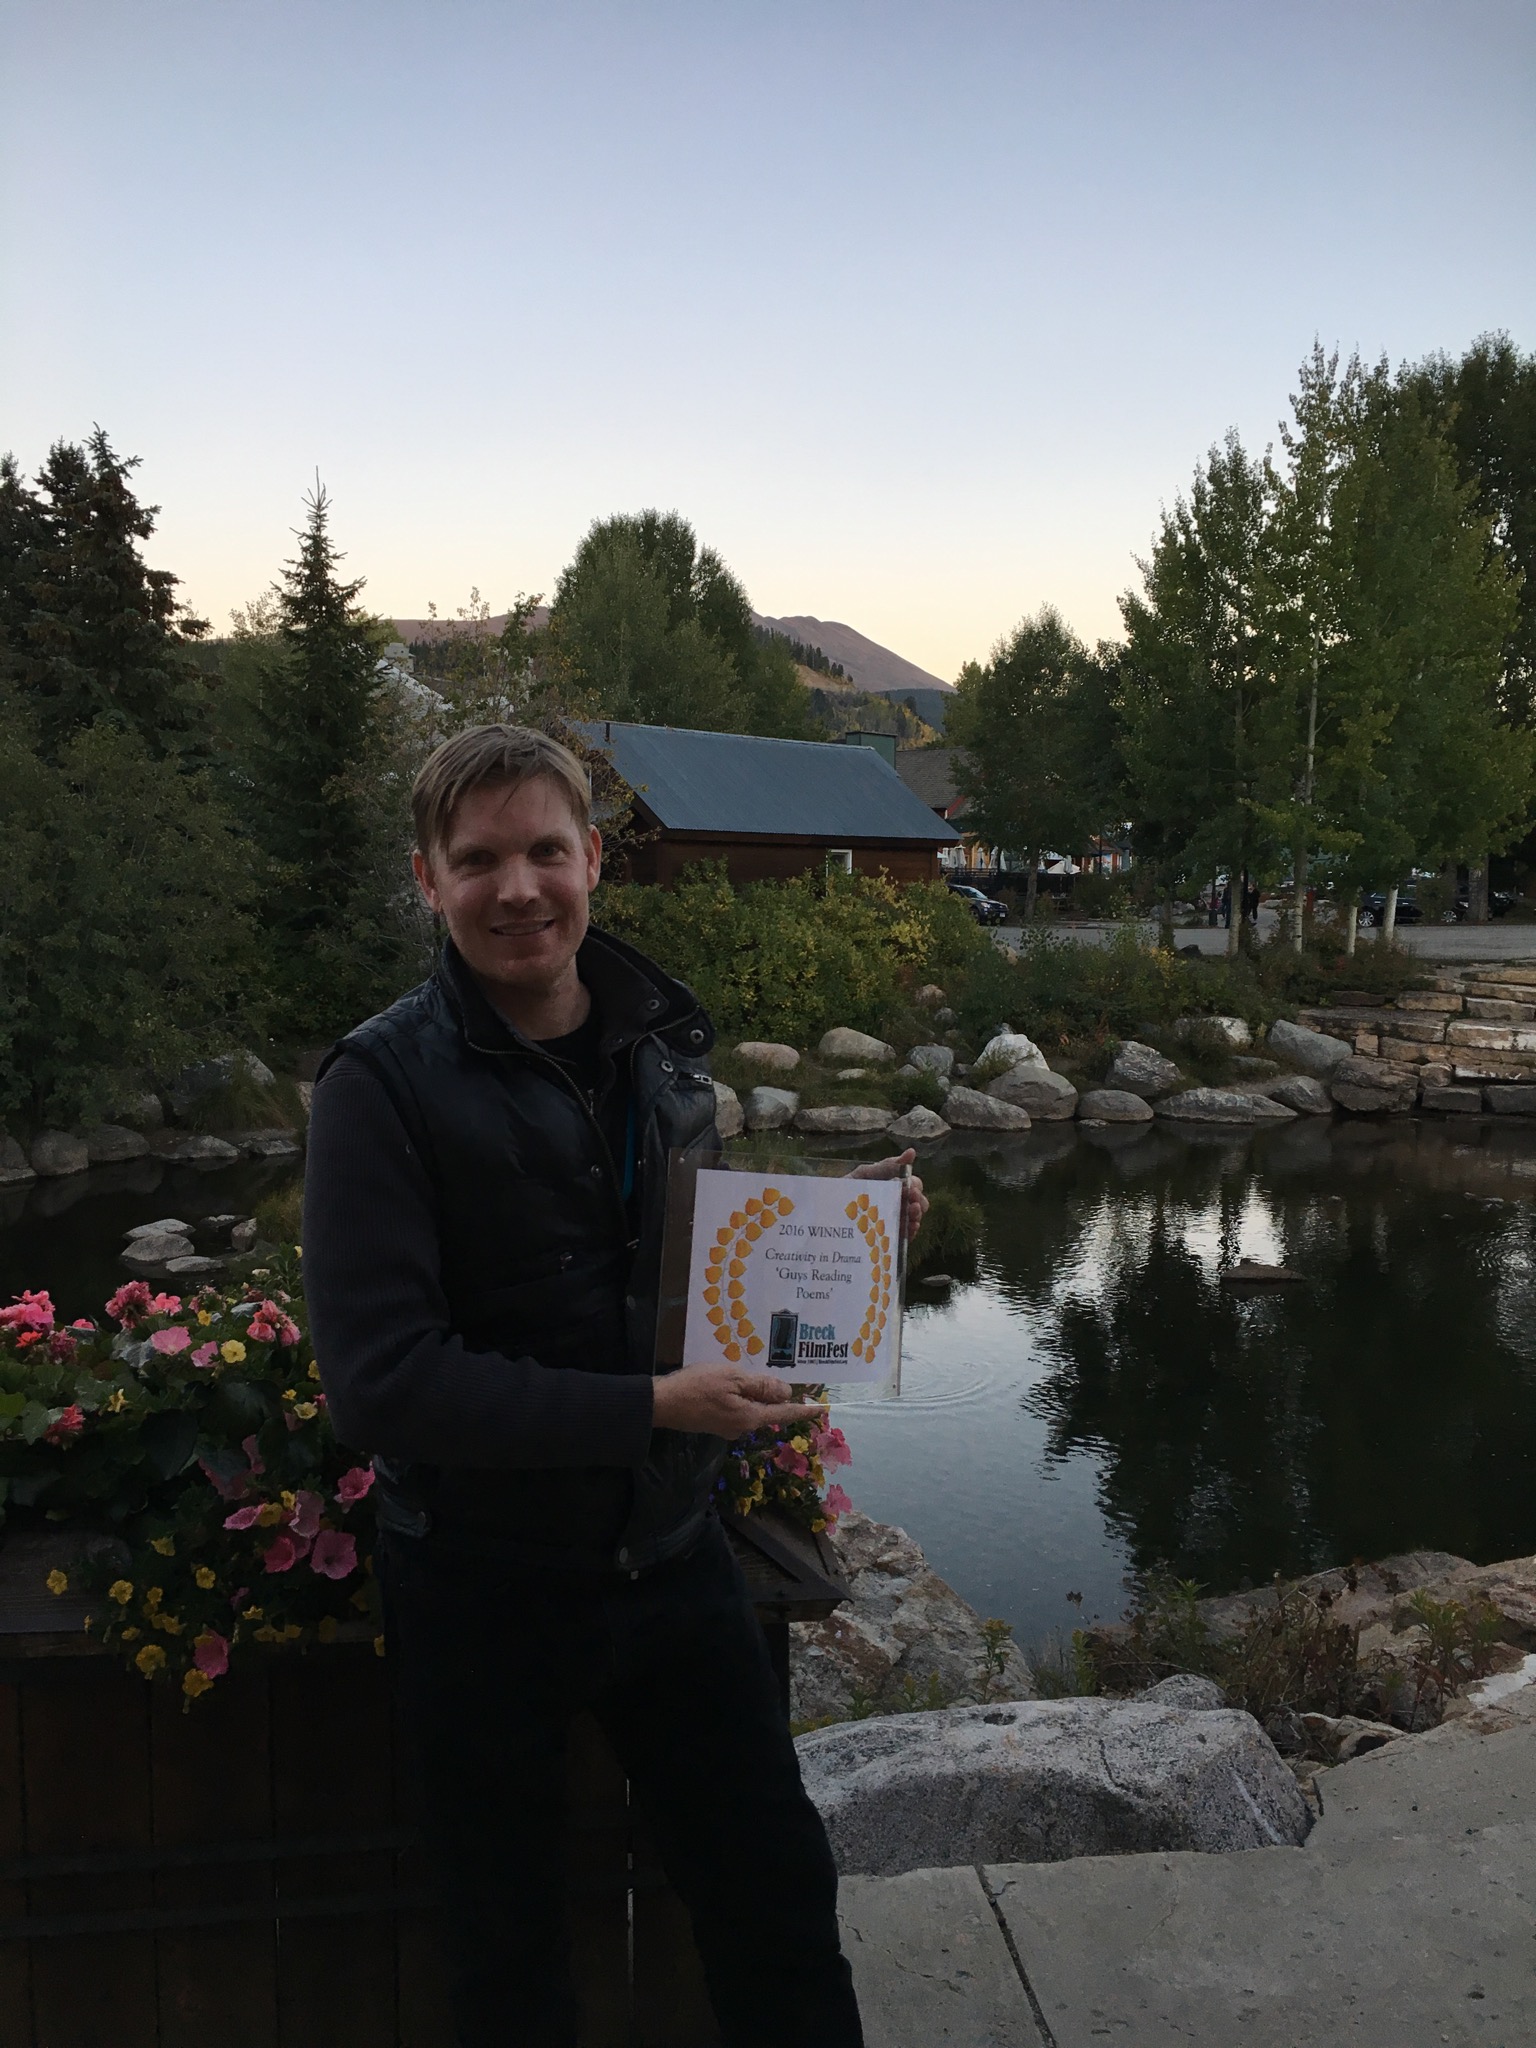 StoryAtlas founder Hunter Lee Hughes scores award at Breckenridge Film Festival